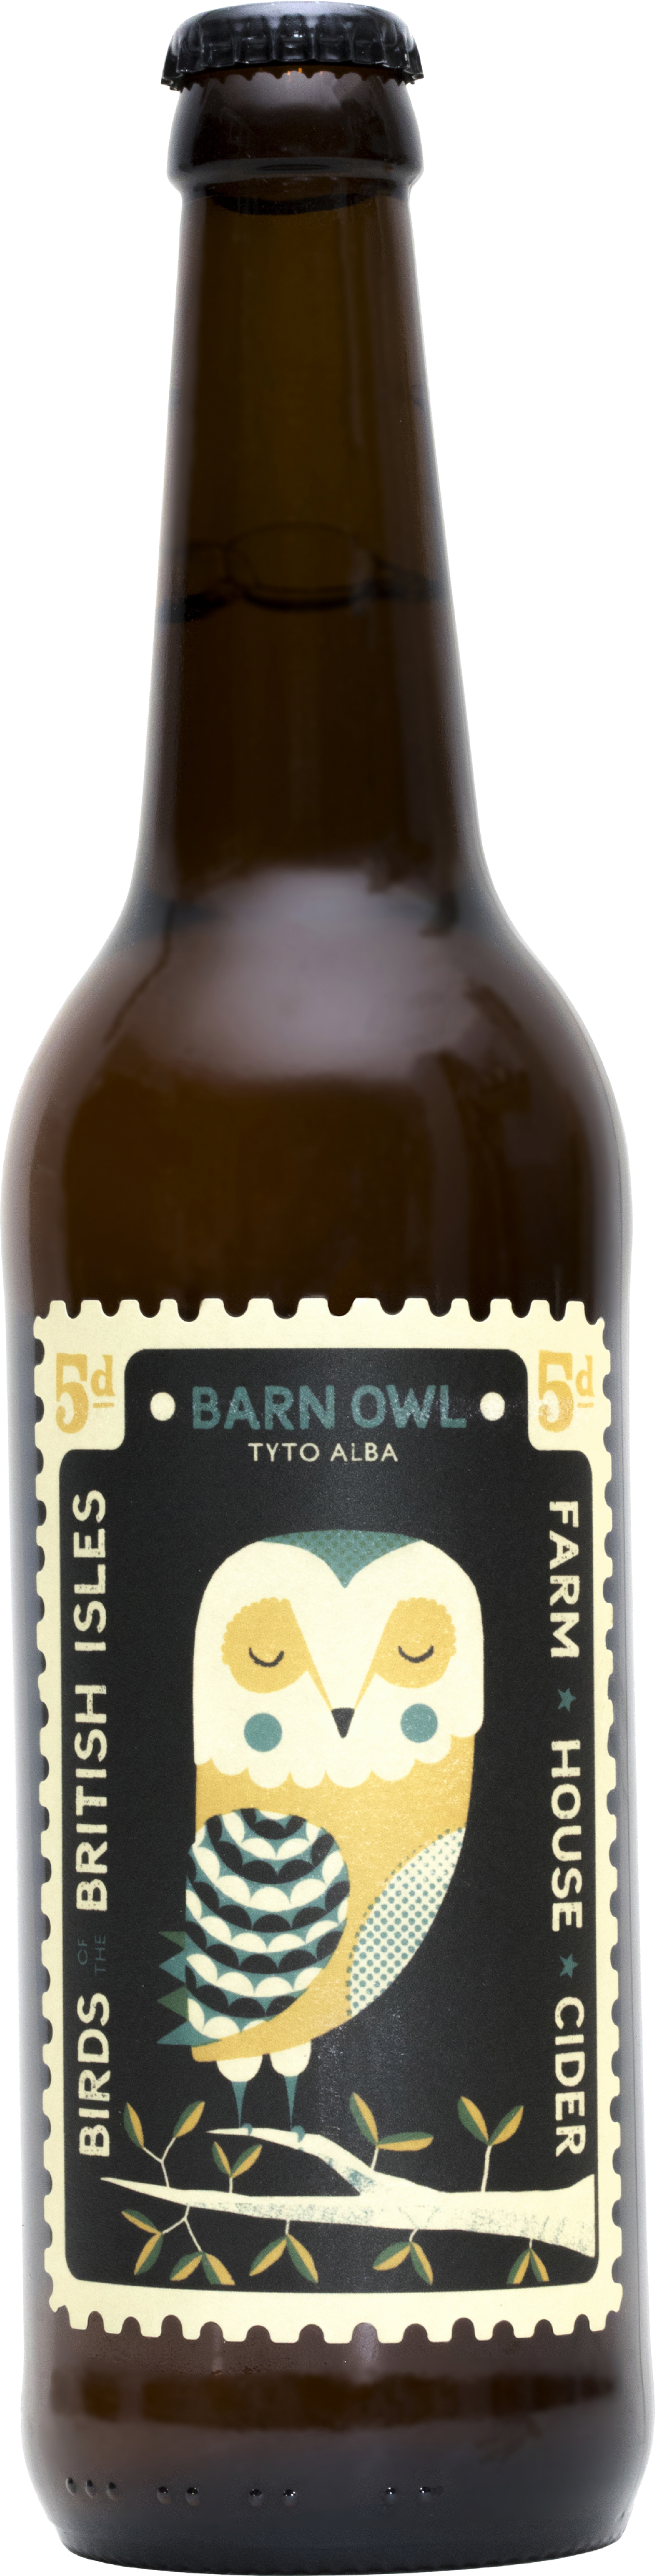 PERRY'S Farmhouse Cider - Barn Owl 500ml 6.5% ABV